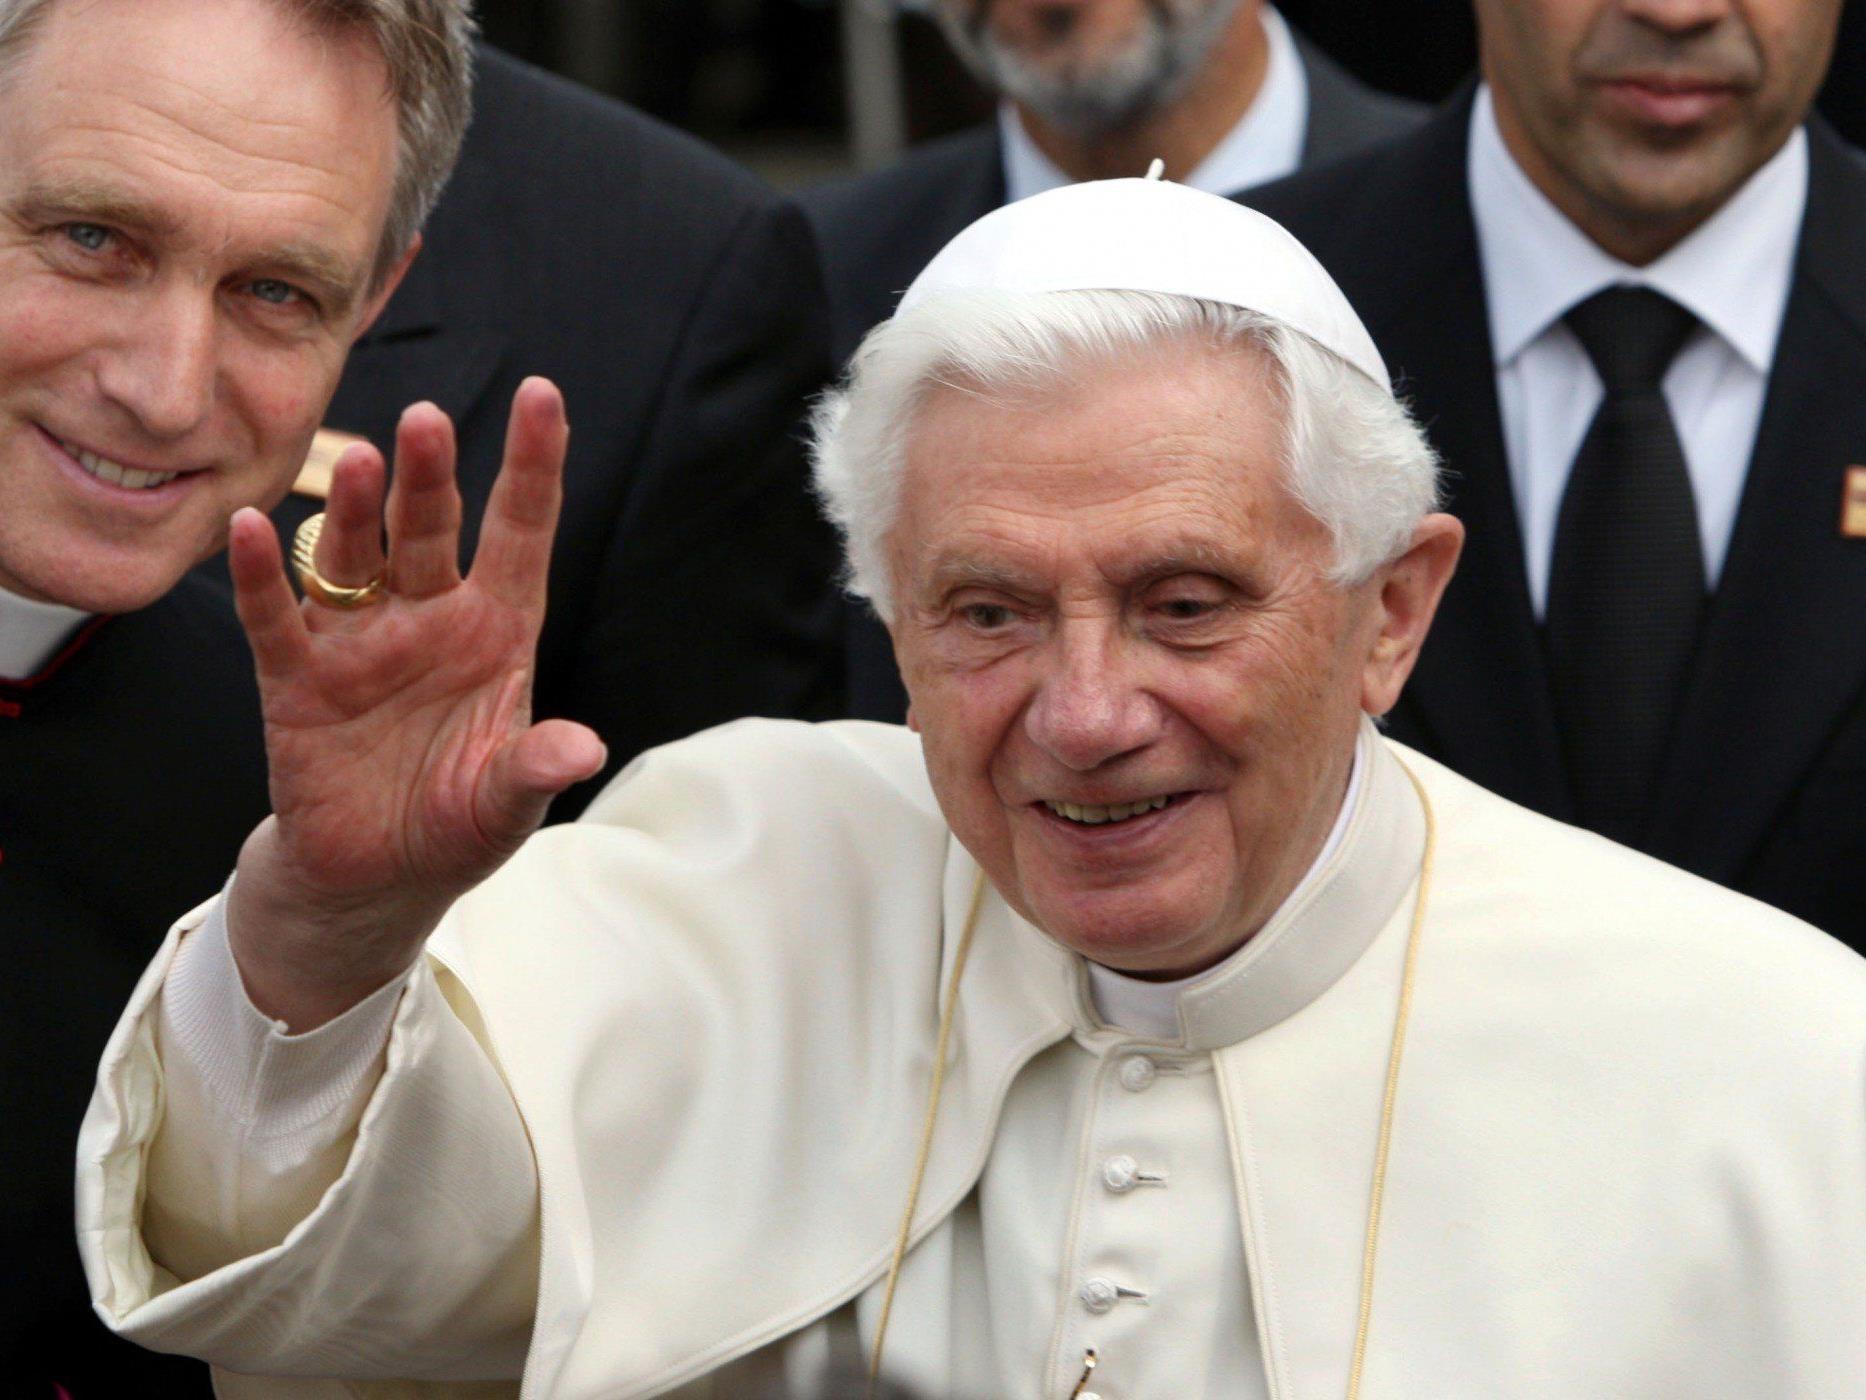 Noch nie hat der Sekretär eines Pontifex so viel Aufmerksamkeit erregt wie Georg Gänswein, der "George Clooney des Vatikans".